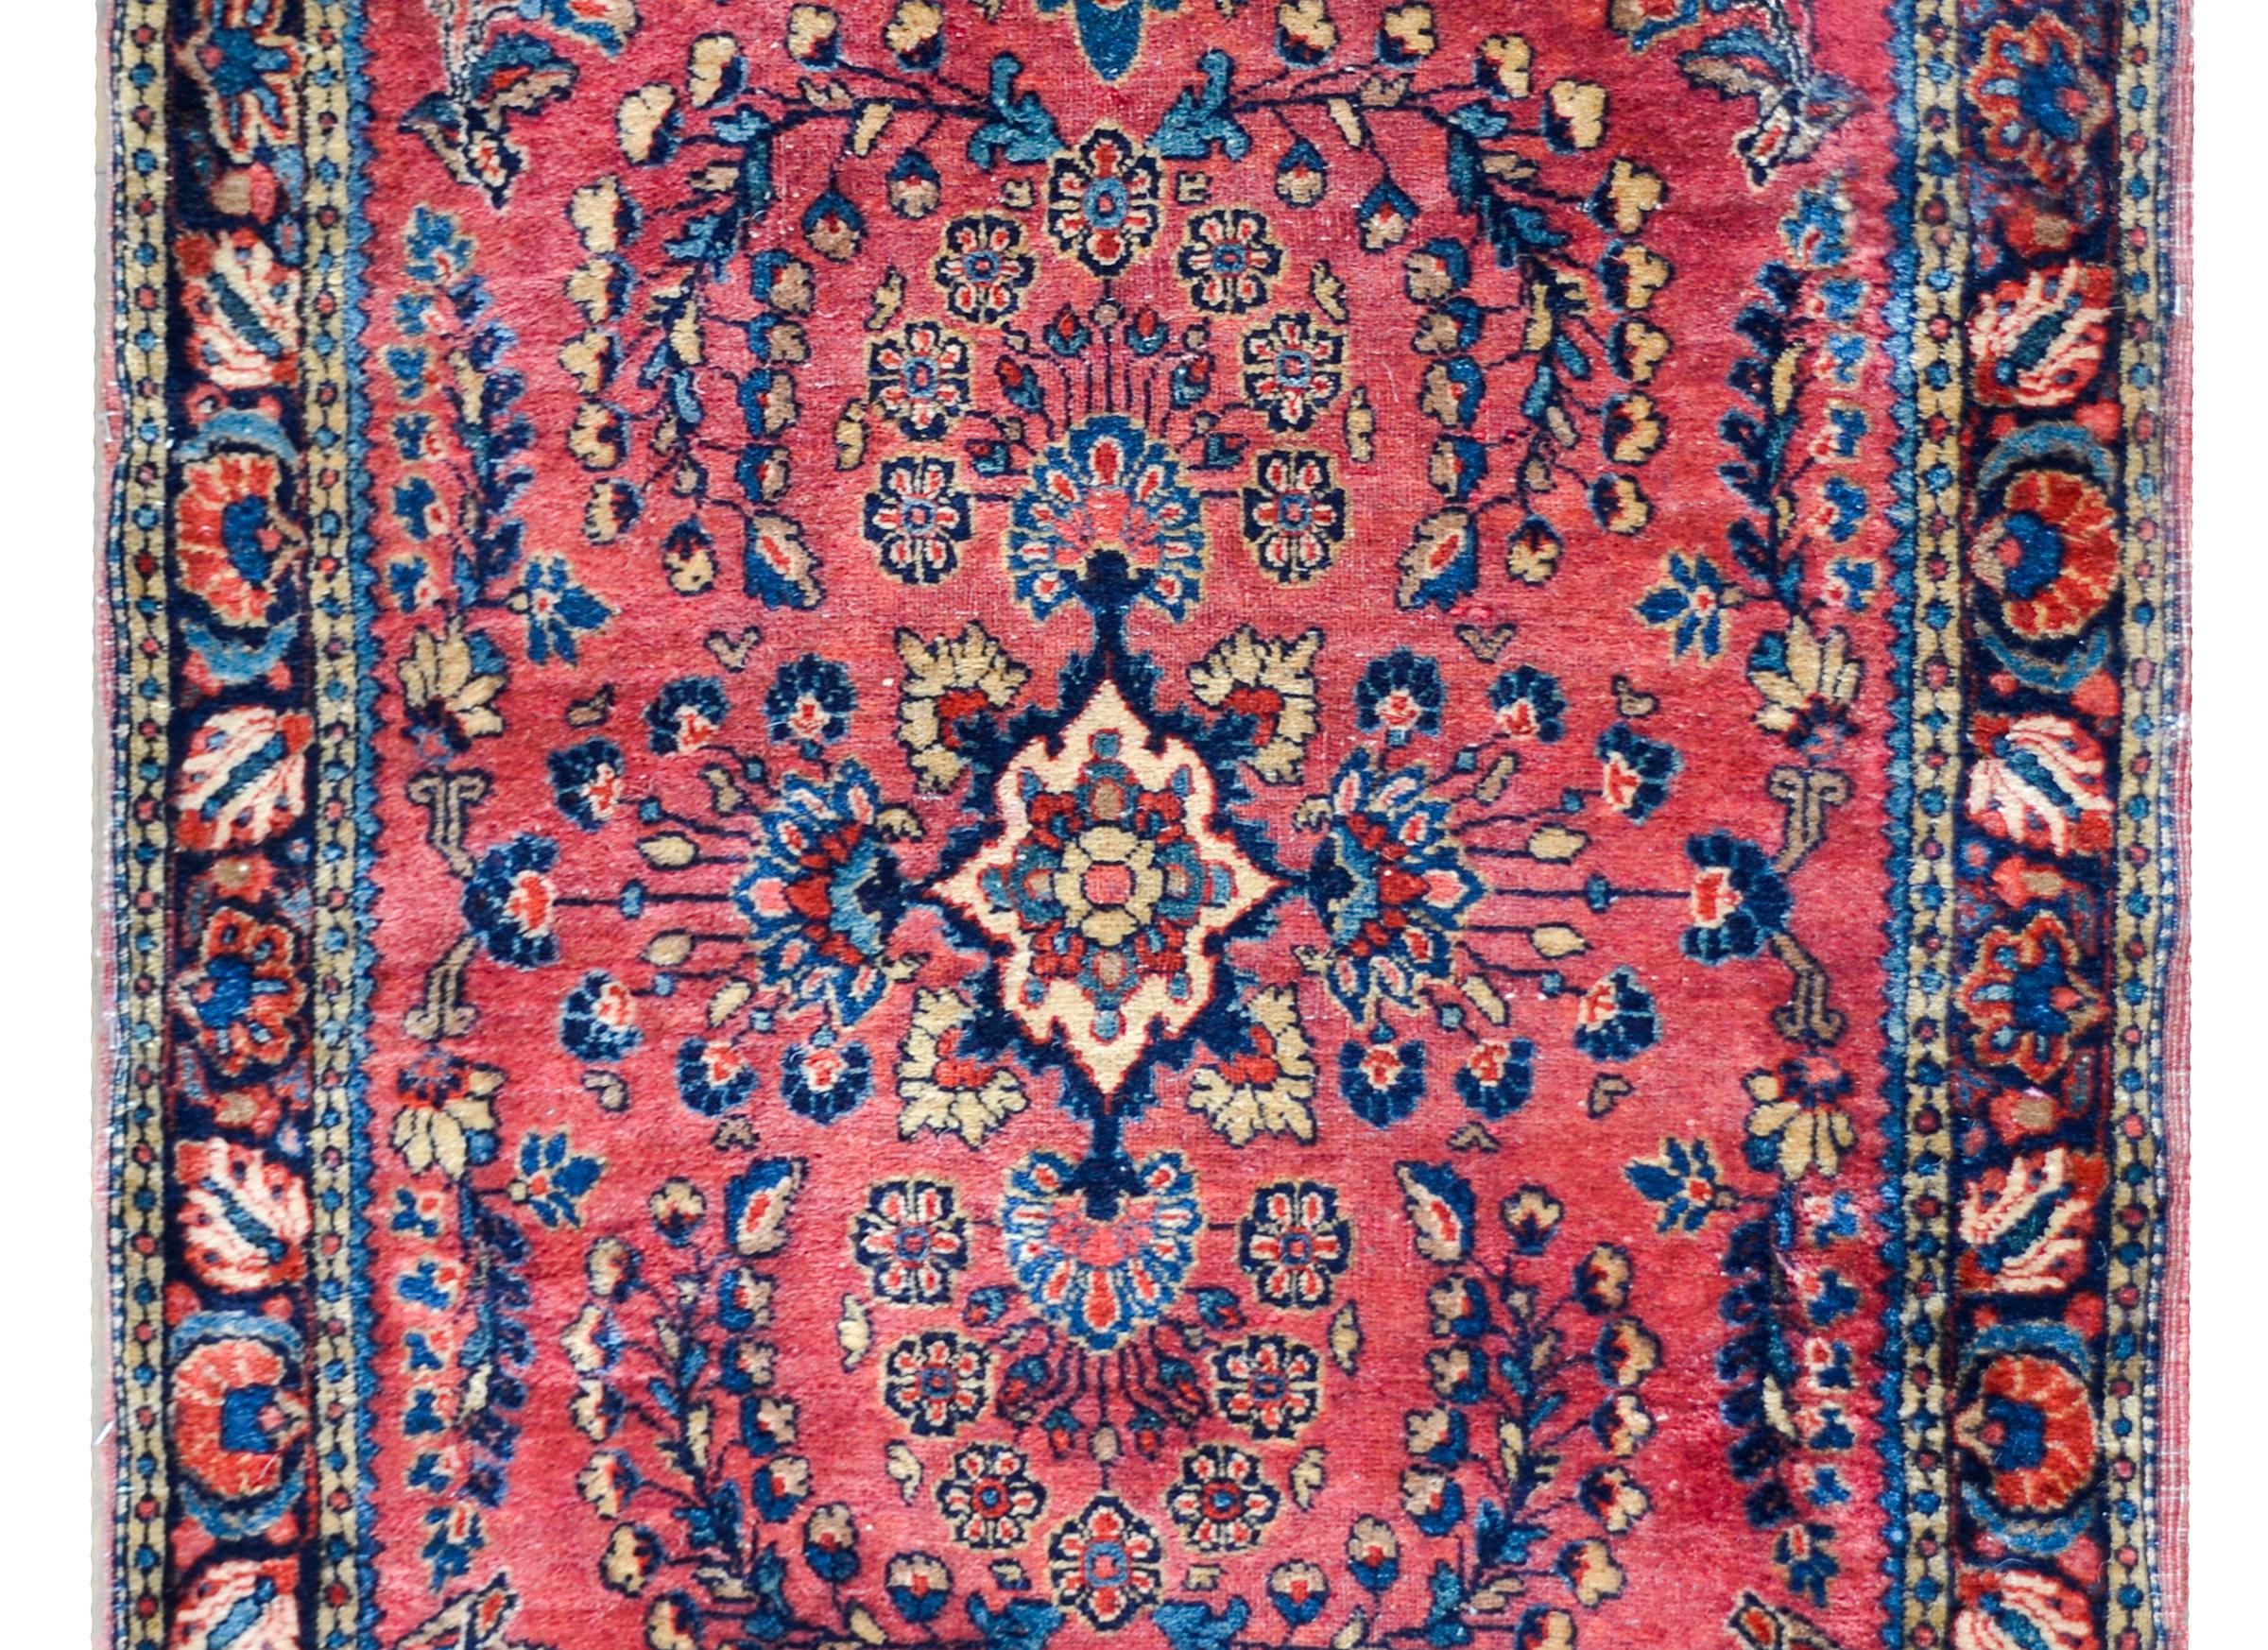 Ein wunderbarer persischer Sarouk-Teppich aus dem frühen 20. Jahrhundert mit einem traditionellen, gespiegelten Blumenmuster in hellem und dunklem Indigo, Creme und Karminrot auf korallenrotem Grund, umgeben von einer schönen, floral gemusterten